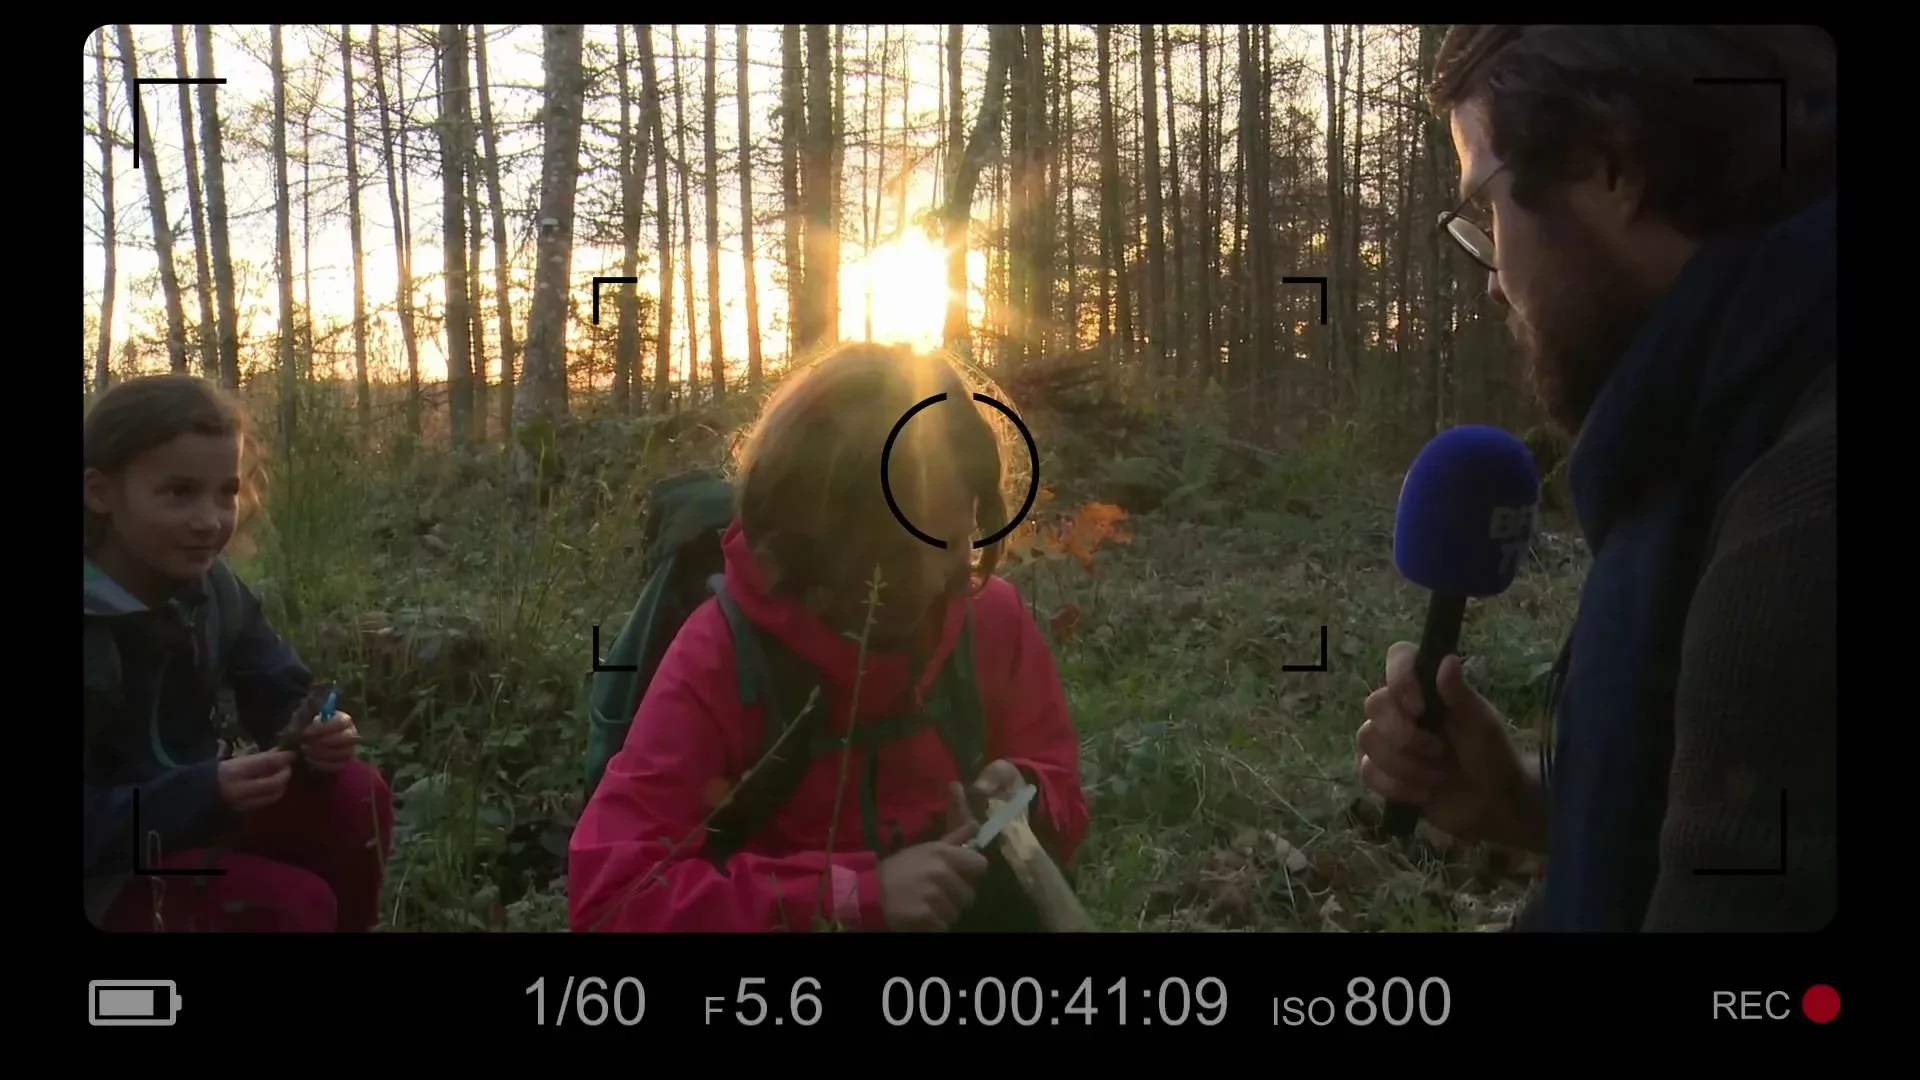 Un journaliste interviewe deux jeunes filles dans un bois au coucher du soleil.